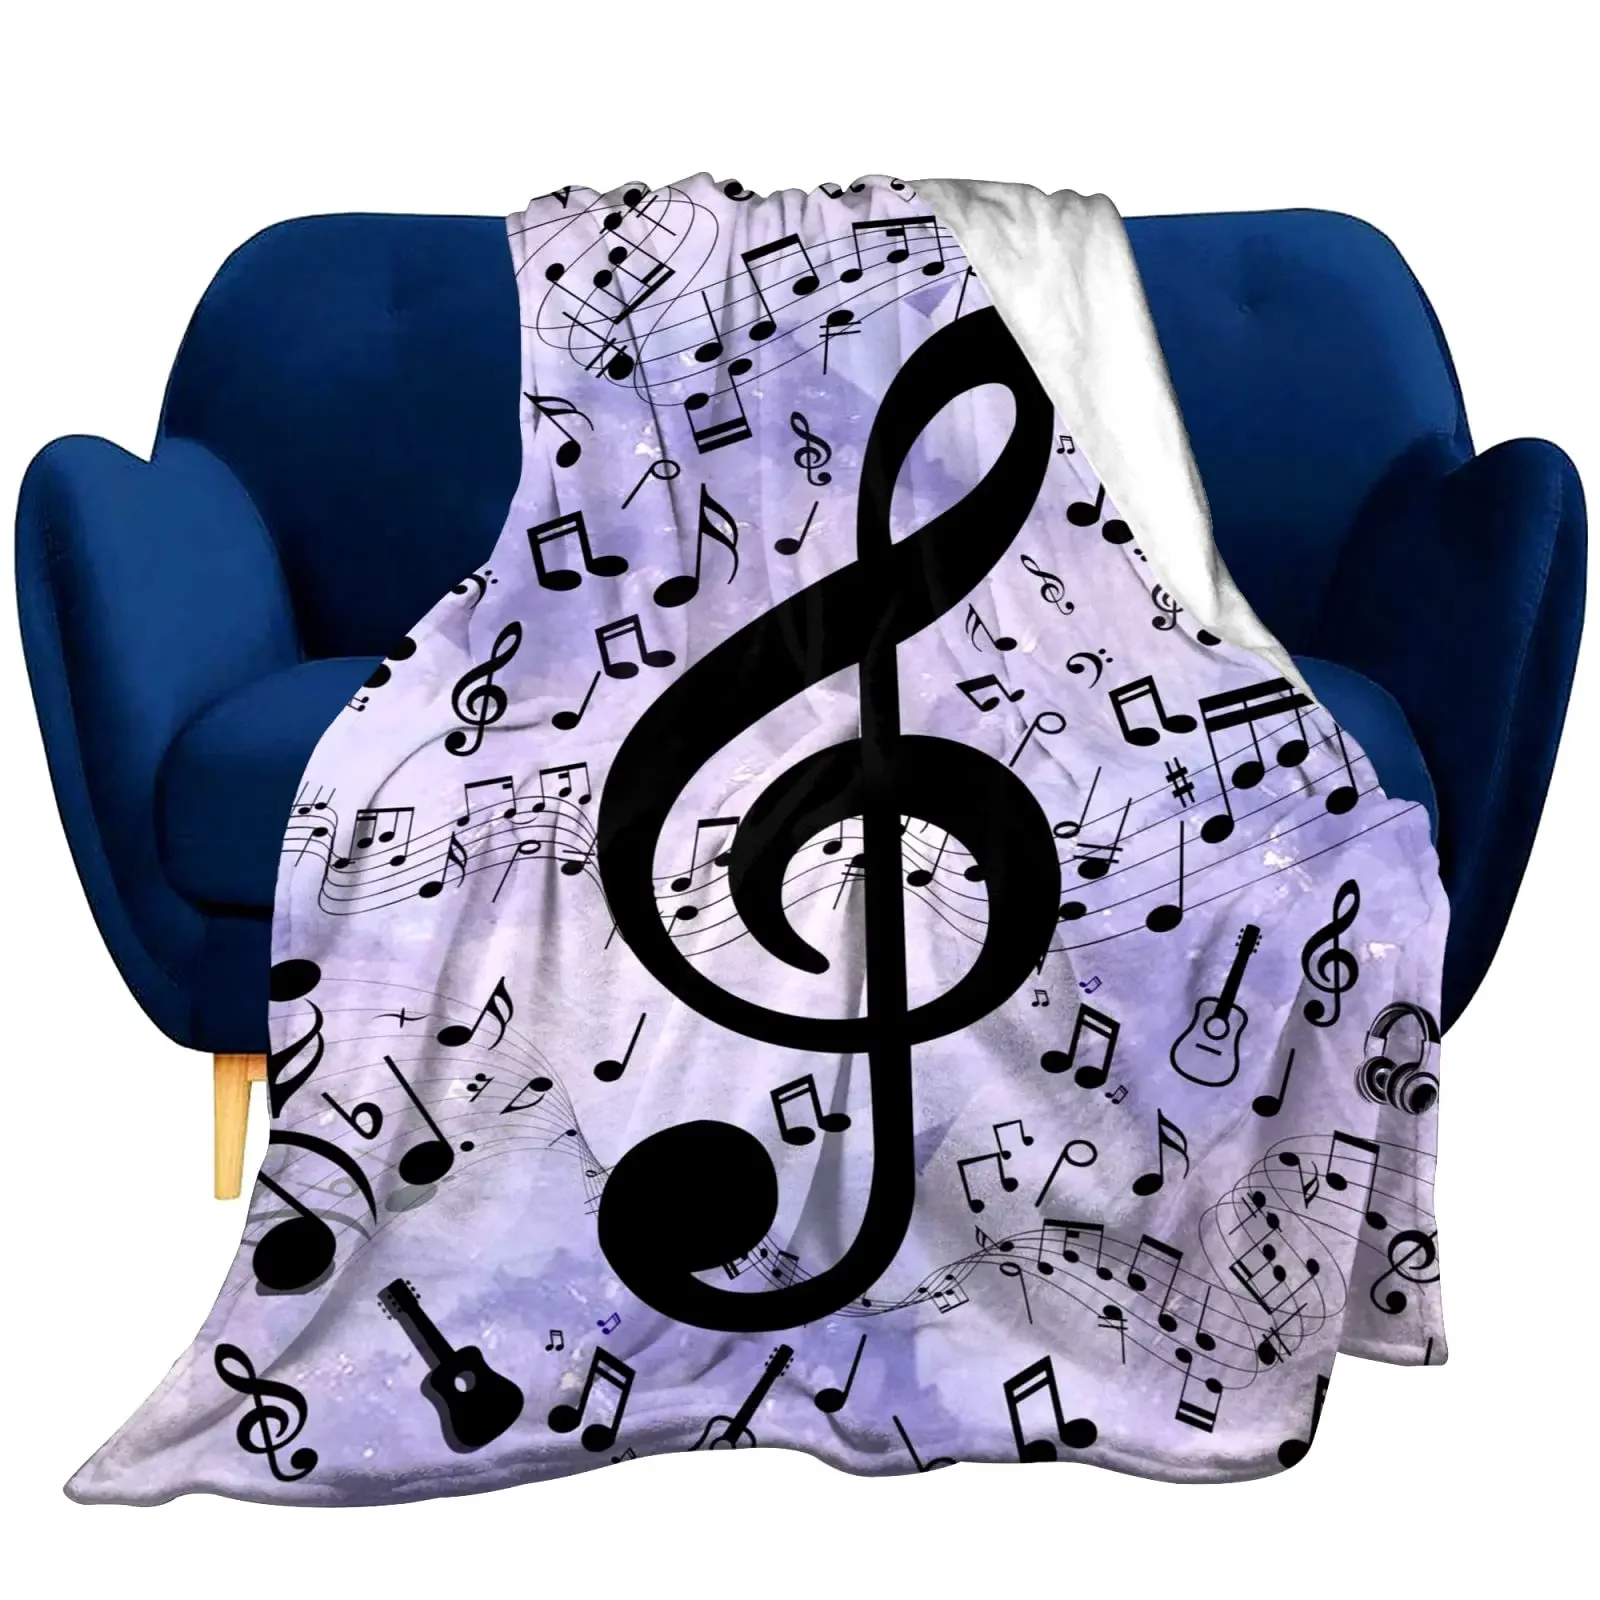 

Фланелевое Одеяло с музыкальными символами, супермягкое легкое одеяло с фиолетовым фоном для дивана, кровати, гостиной, большого размера